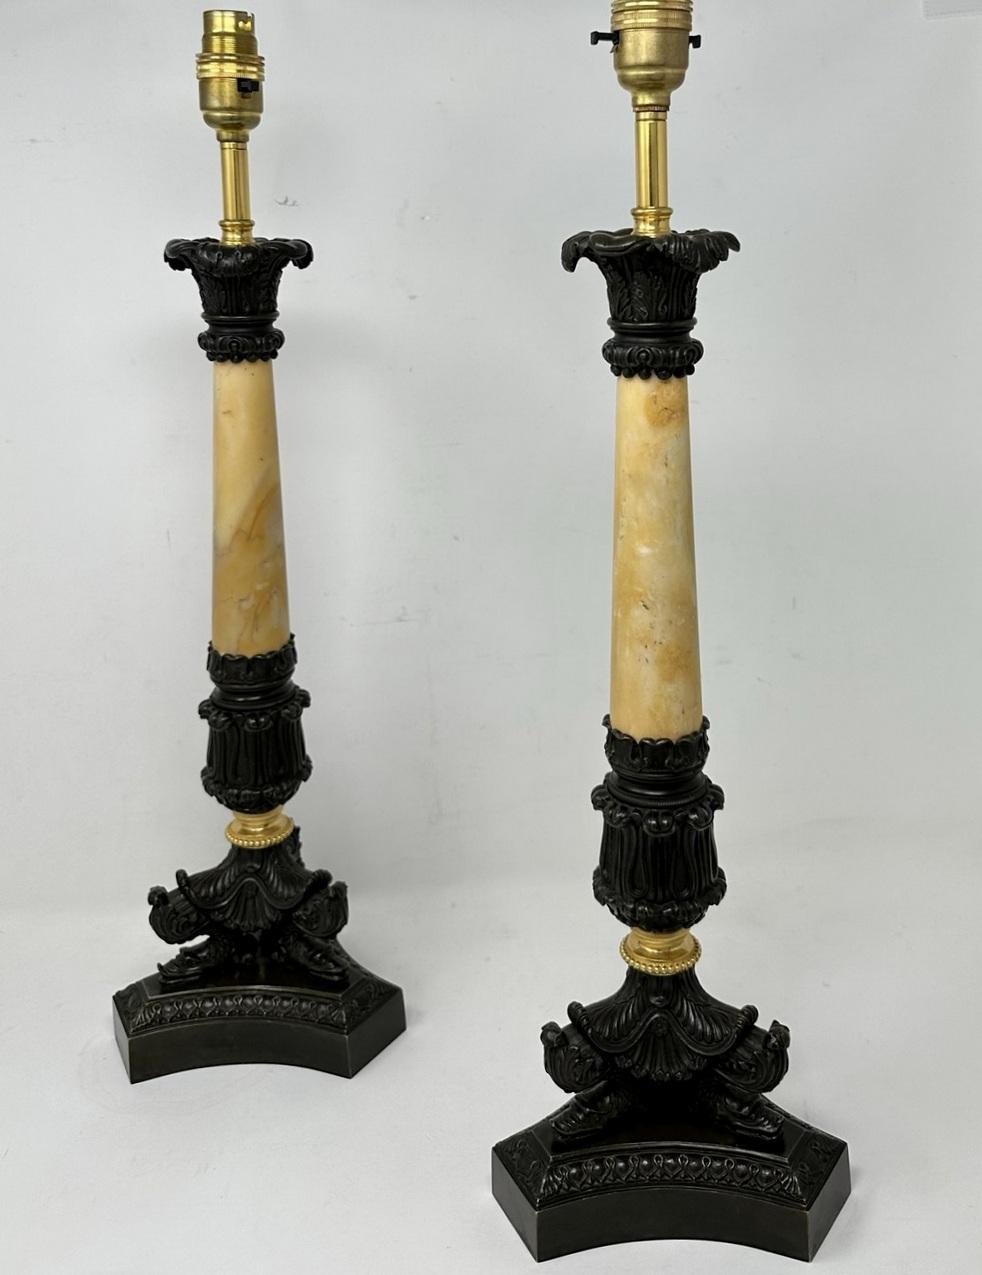 Exceptionnelle paire de chandeliers en bronze patiné et bronze doré du début de l'époque victorienne, aux proportions assez grandes et hautes, maintenant convertis en une étonnante paire de lampes de table électriques, offerte dans un état